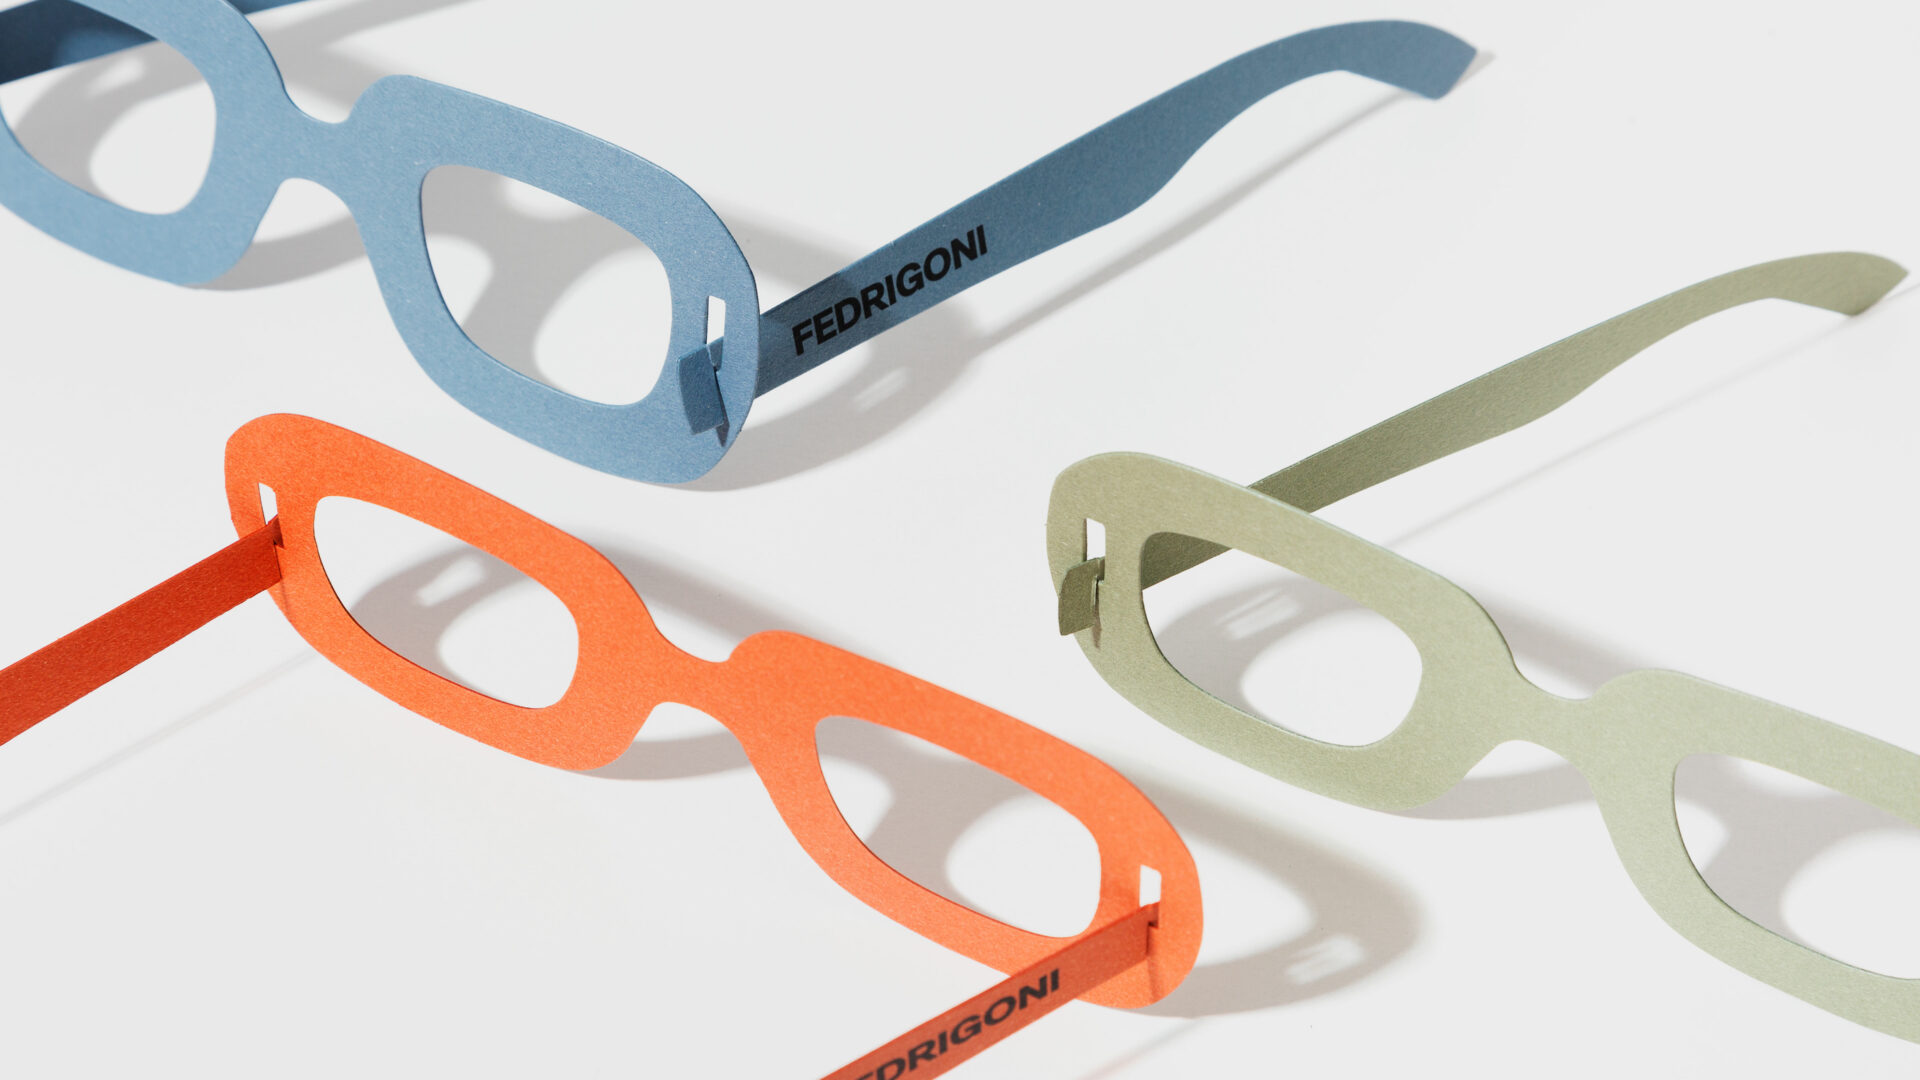 Gafas Fedrigoni para ver el mundo de forma diferente